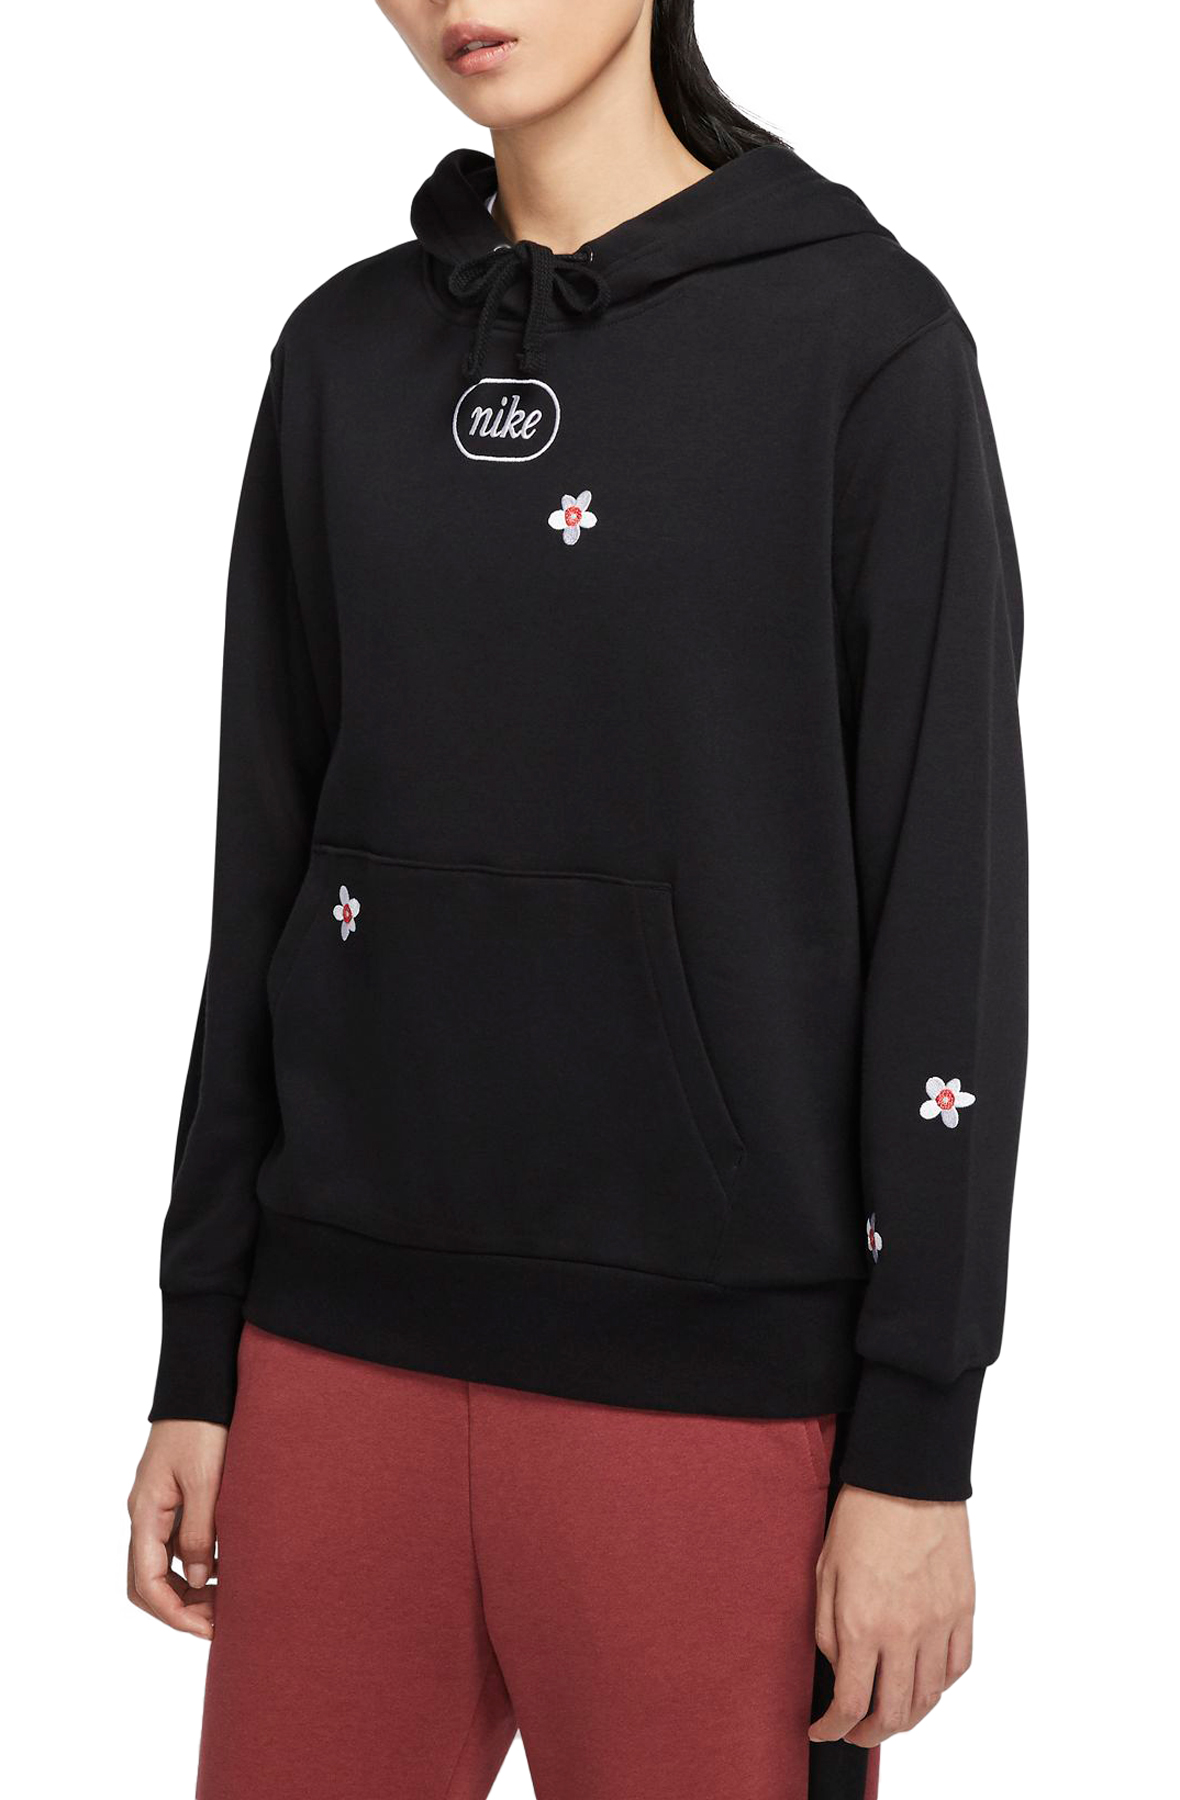 nike embroidered flower hoodie sweatshirt